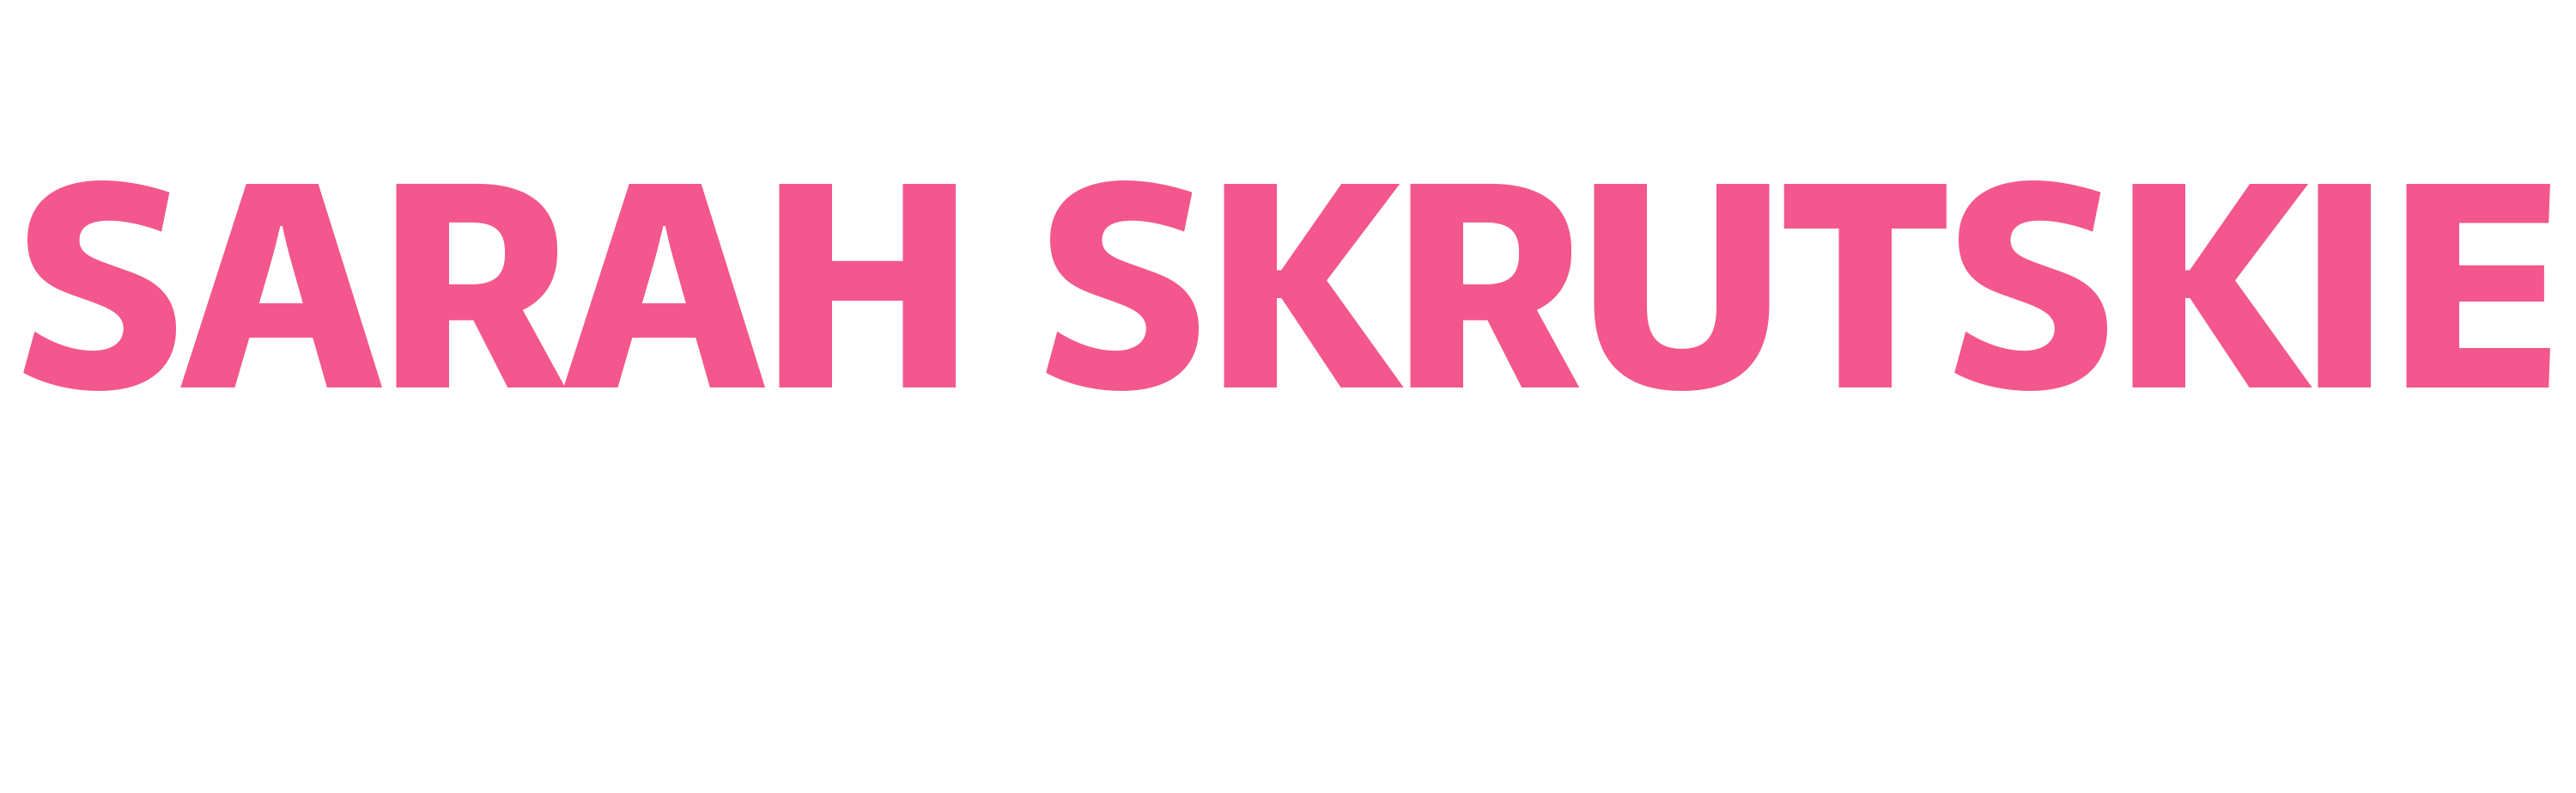 Sarah Skrutskie